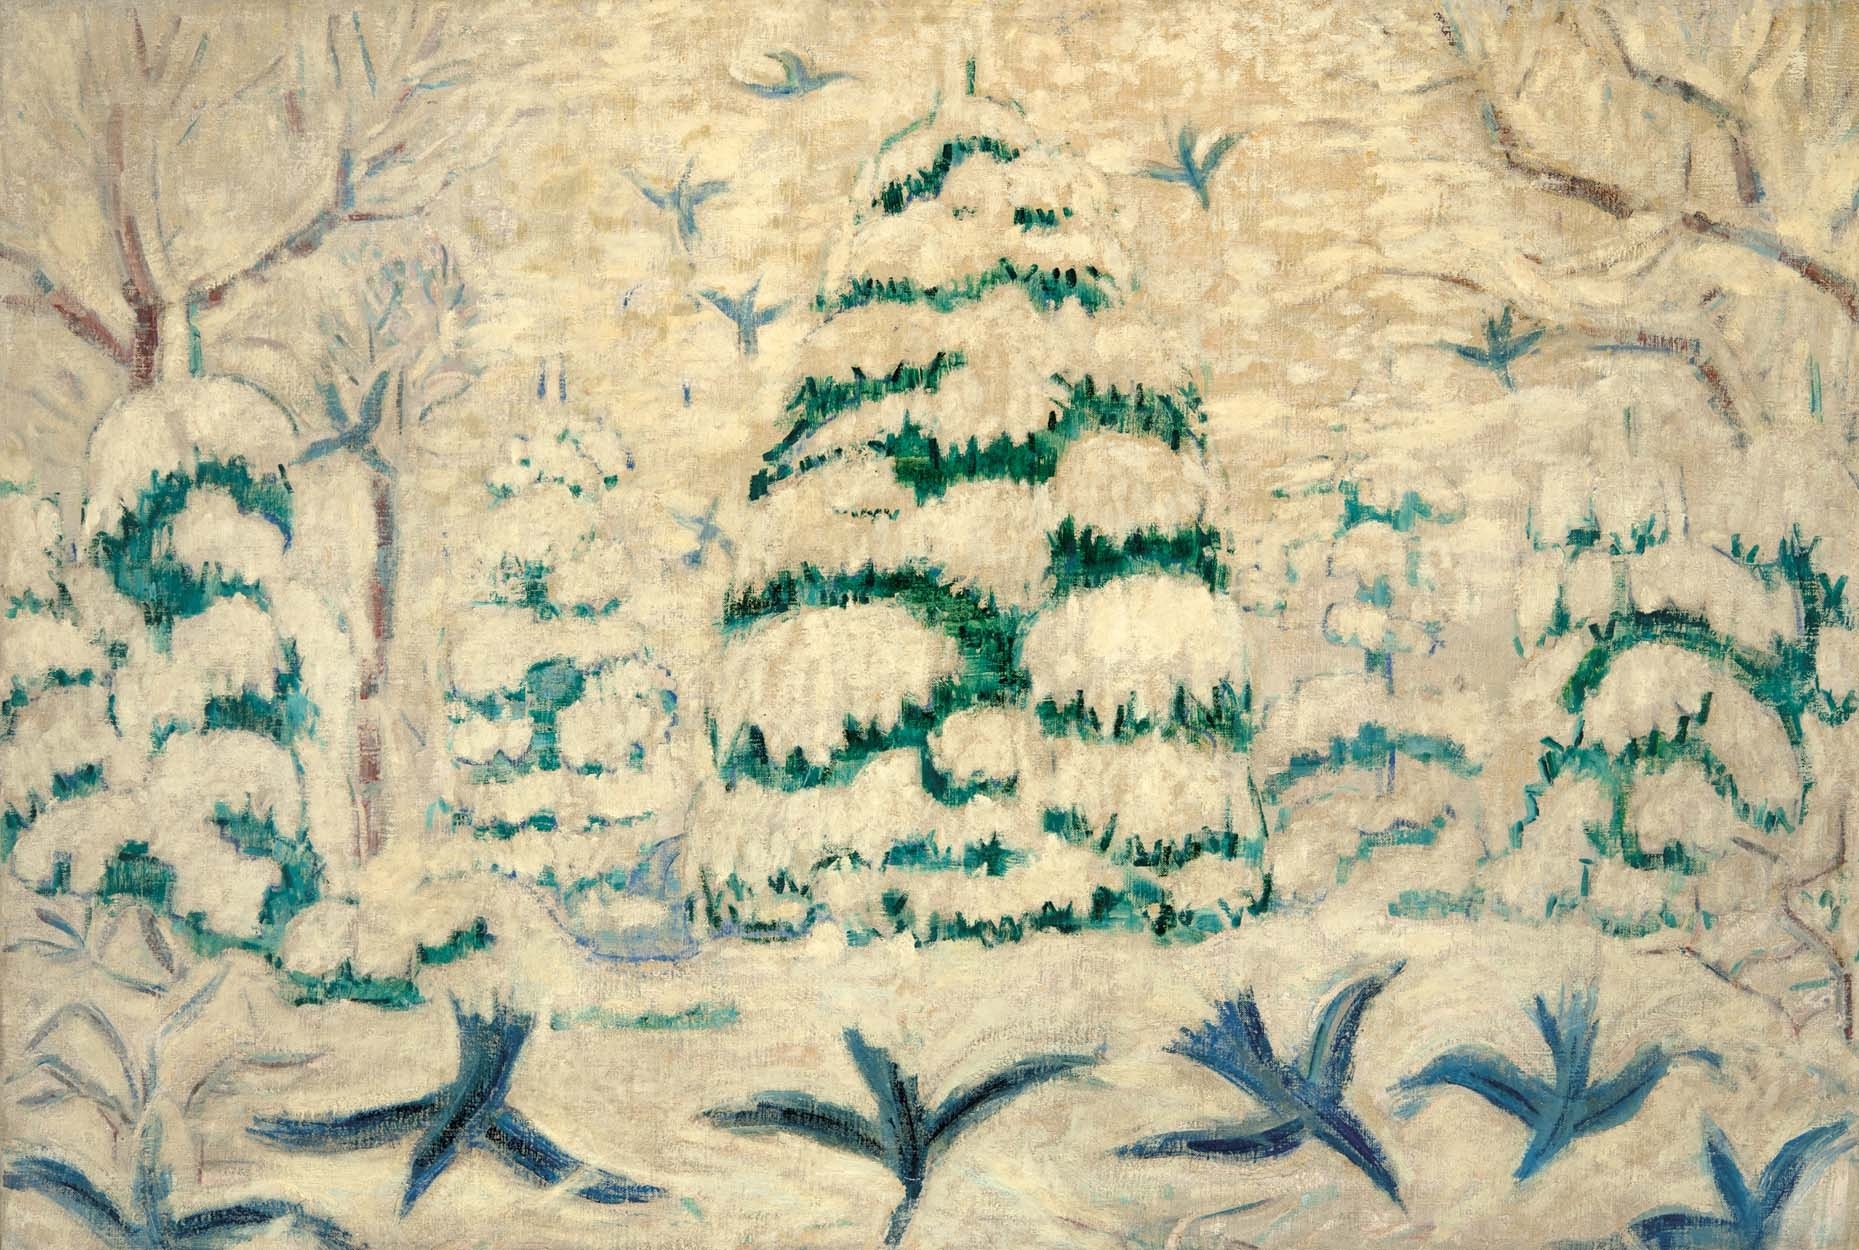 Járitz Józsa (1893-1986) Snowy Pines